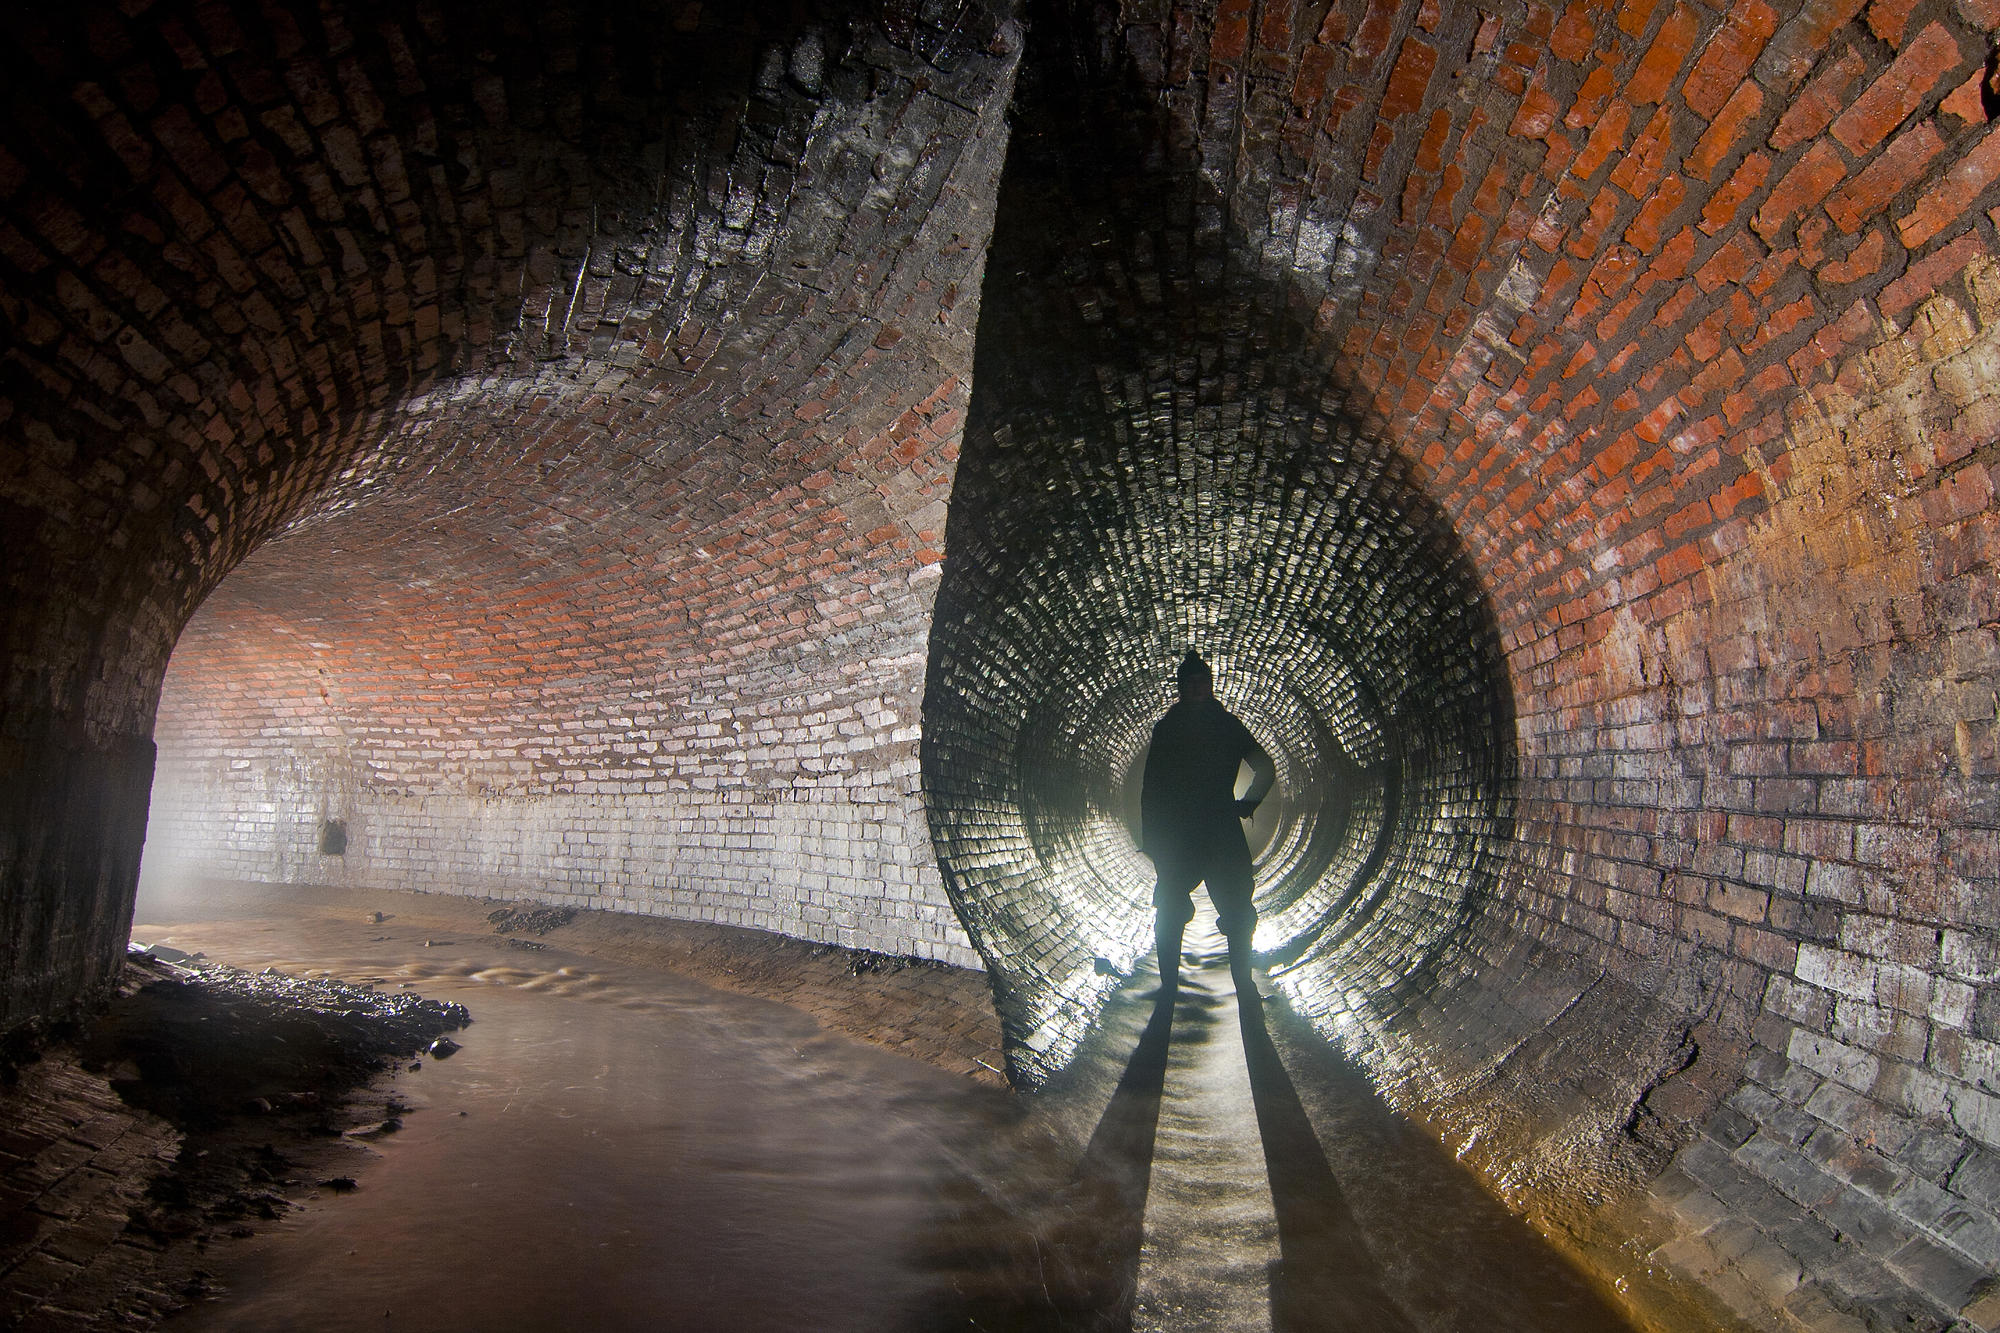 Подземный город в москве